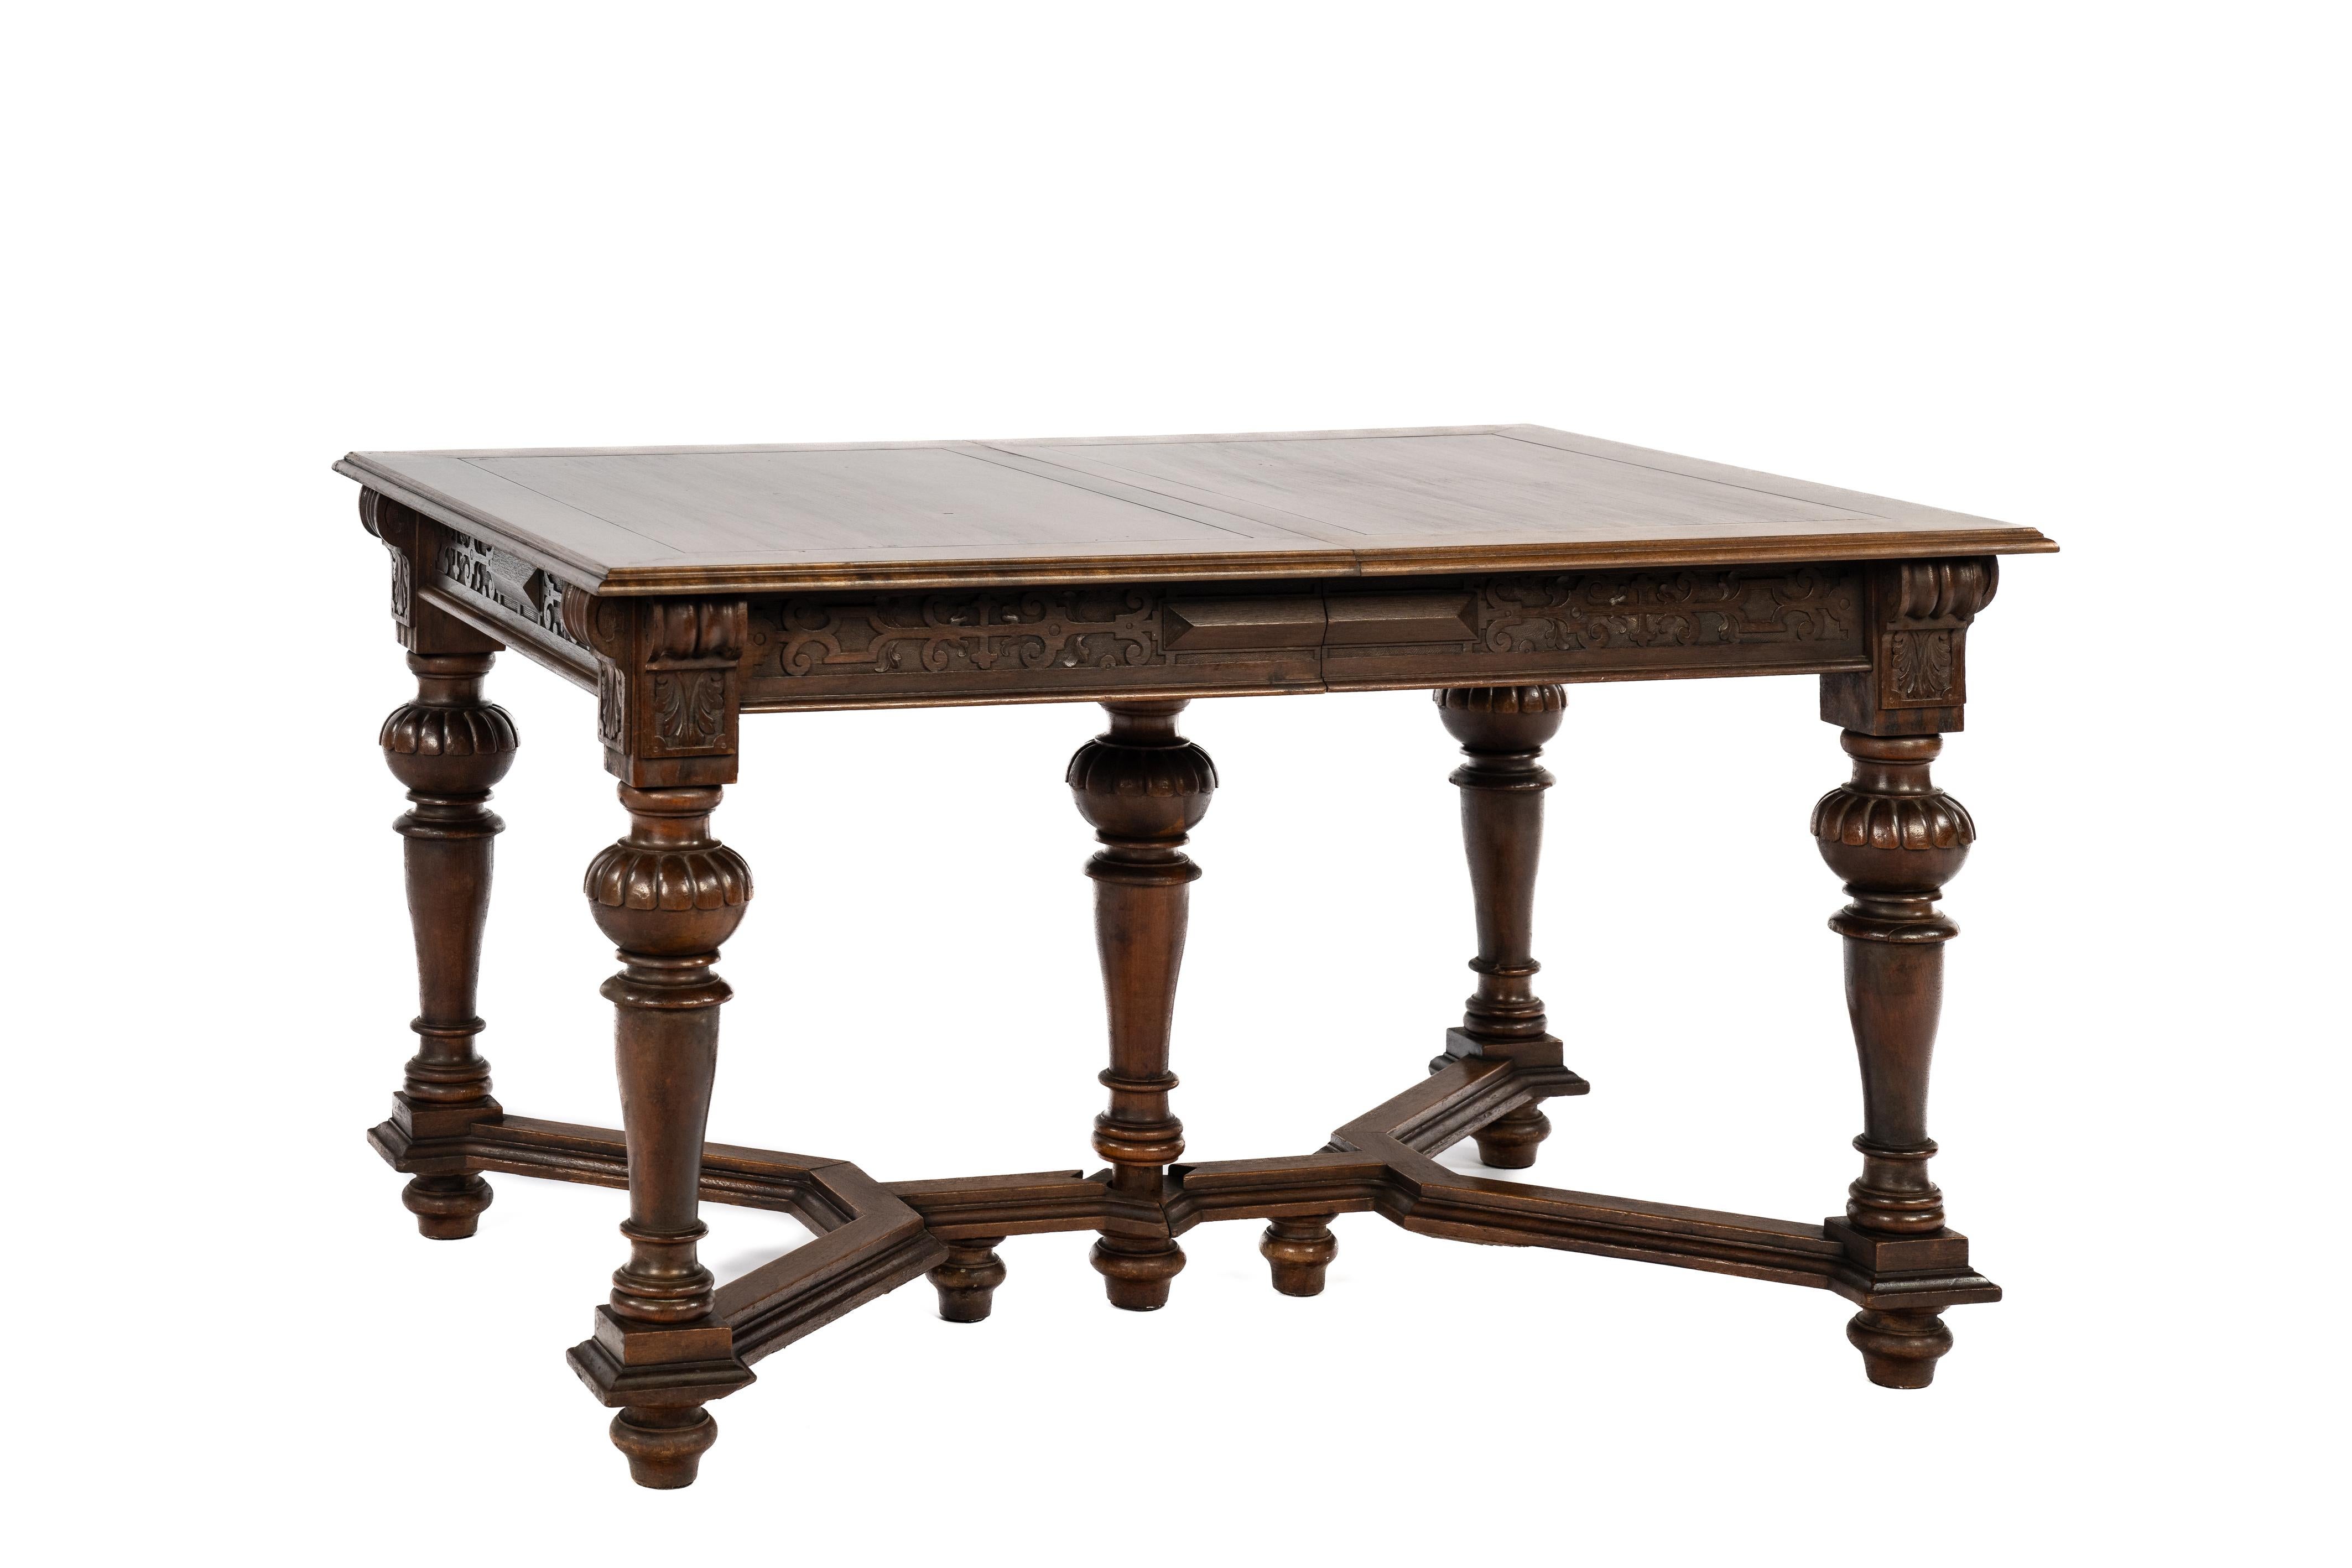 Nous vous proposons ici une table à abattant ancienne fabriquée en France vers 1870. La table est entièrement fabriquée en bois de cerisier et est richement ornée de décorations classiques datant de la Renaissance. Les motifs d'acanthe stylisés, le